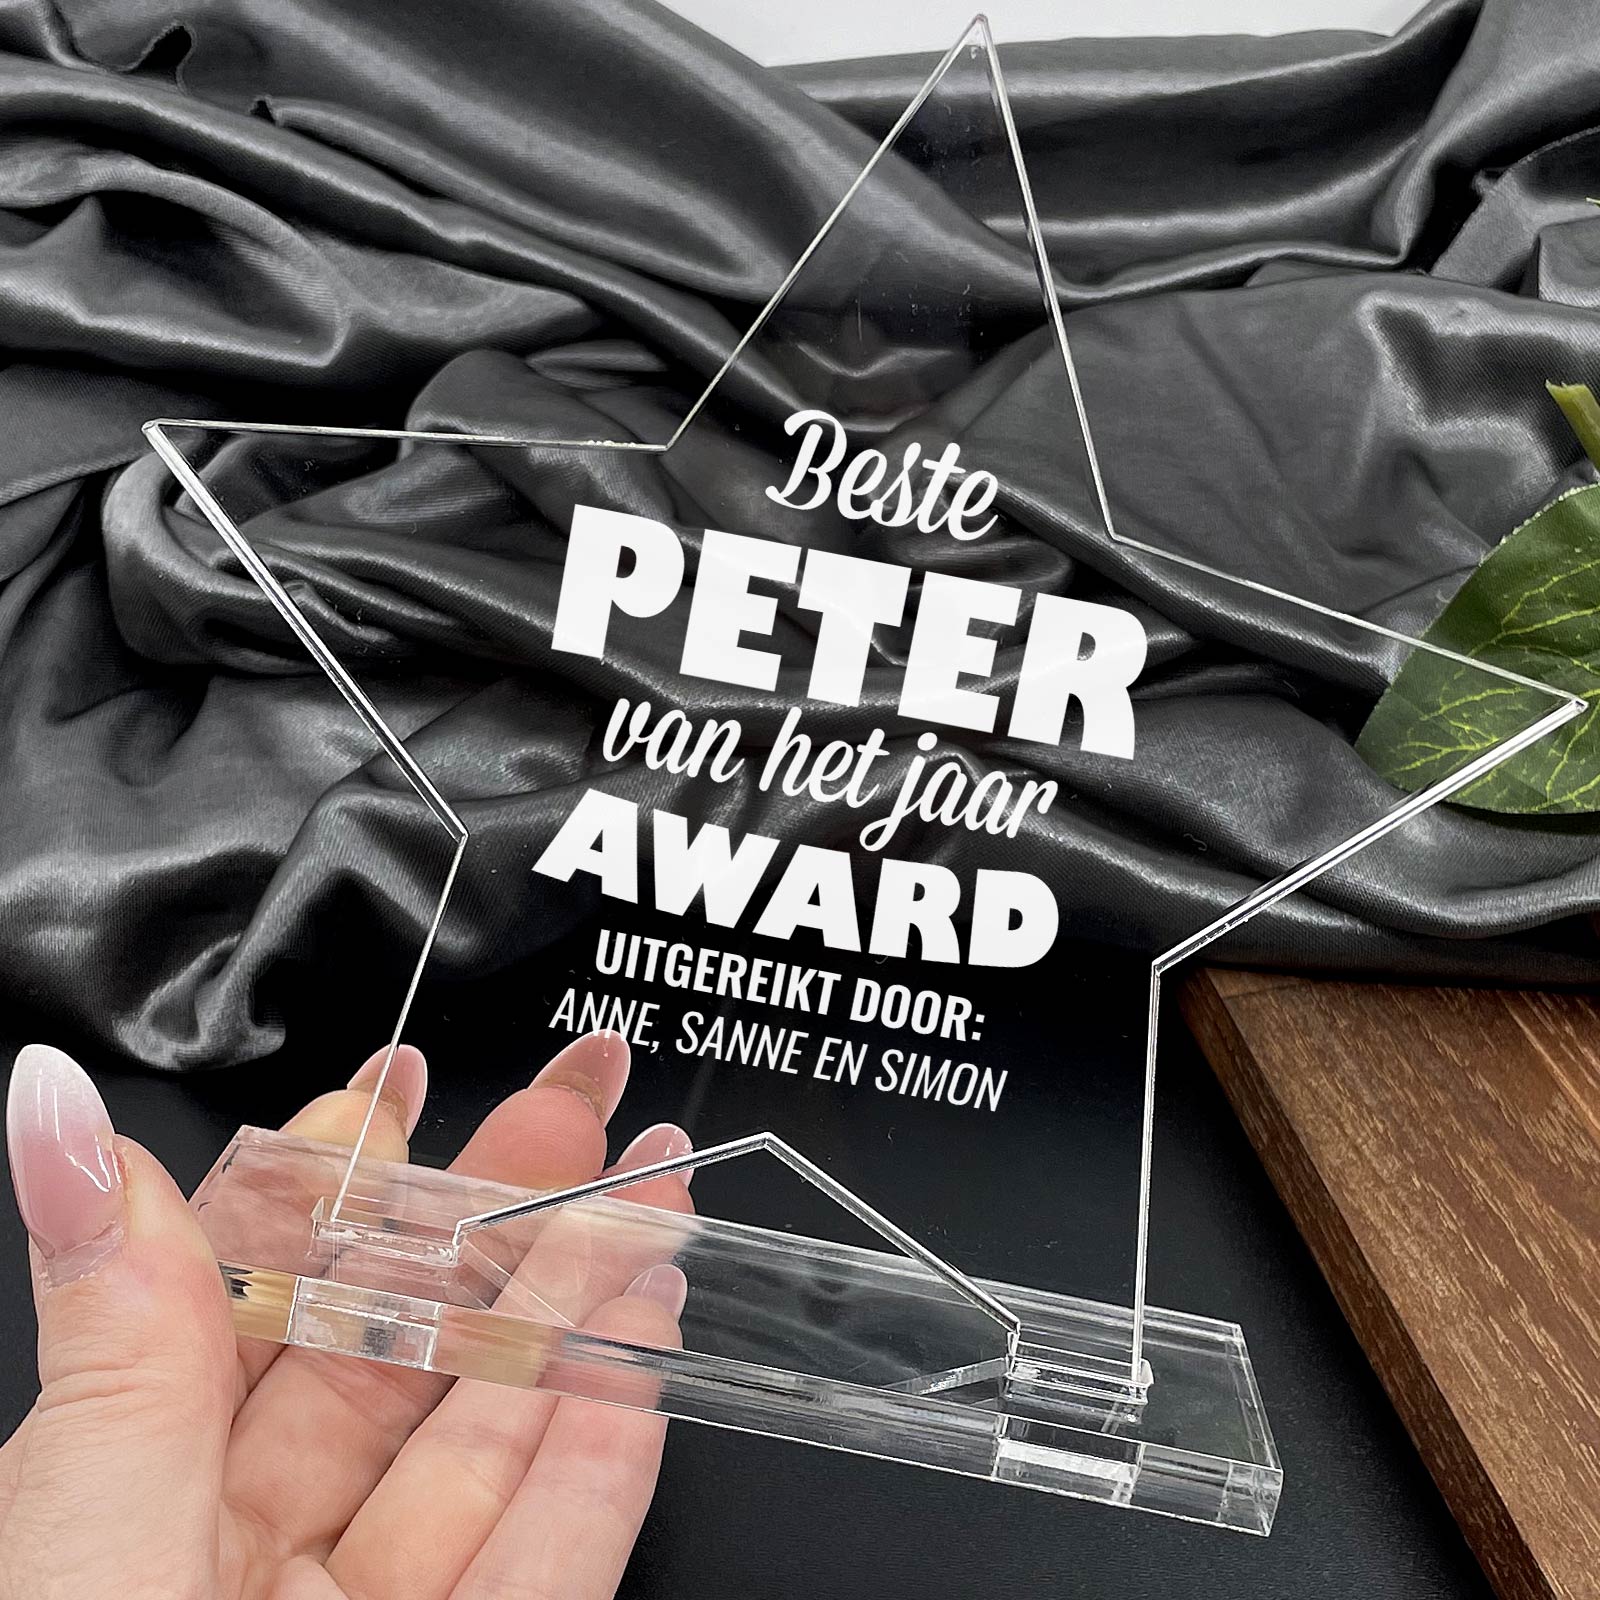 Beste Peter van het Jaar Award - Bella Mia